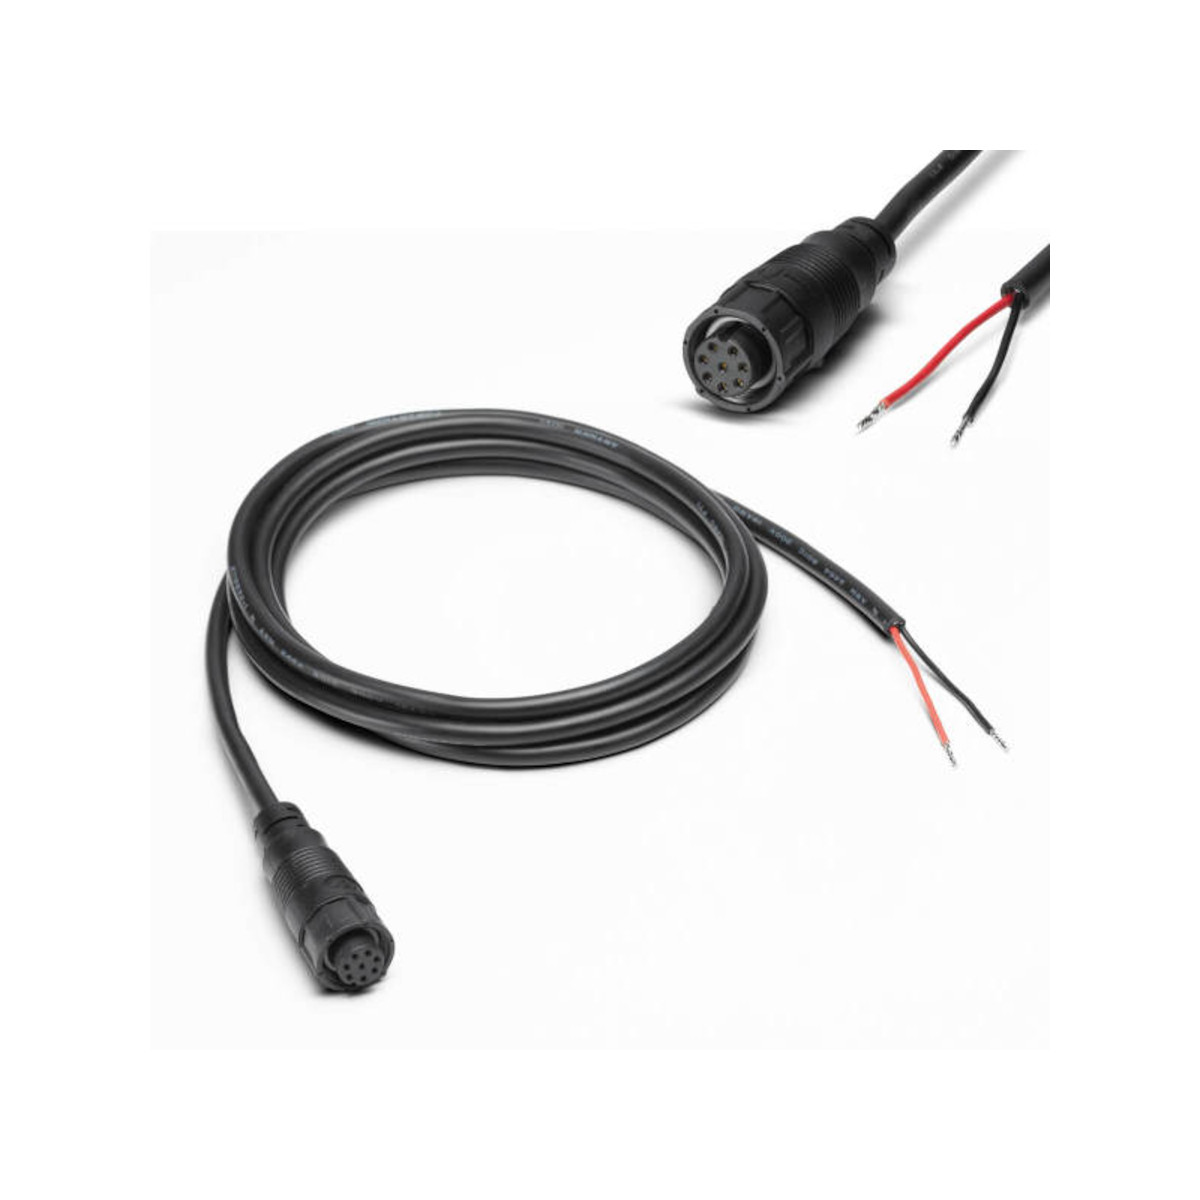 Humminbird PC 12 câble d’alimentation avec filtre pour traceur de carte SOLIX et ONIX - 1,80 m